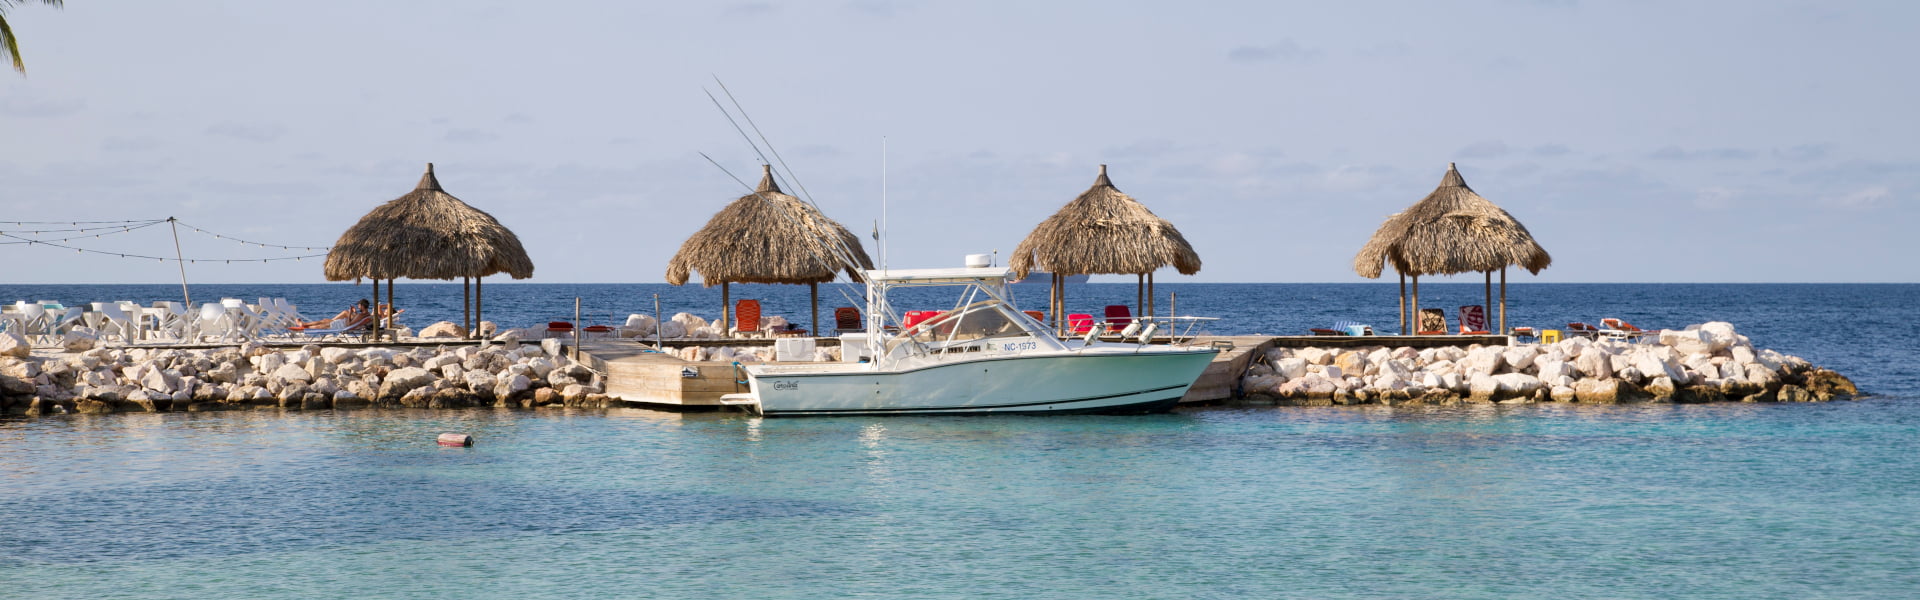 viswater in de omgeving van je vakantiehuis op Curacao